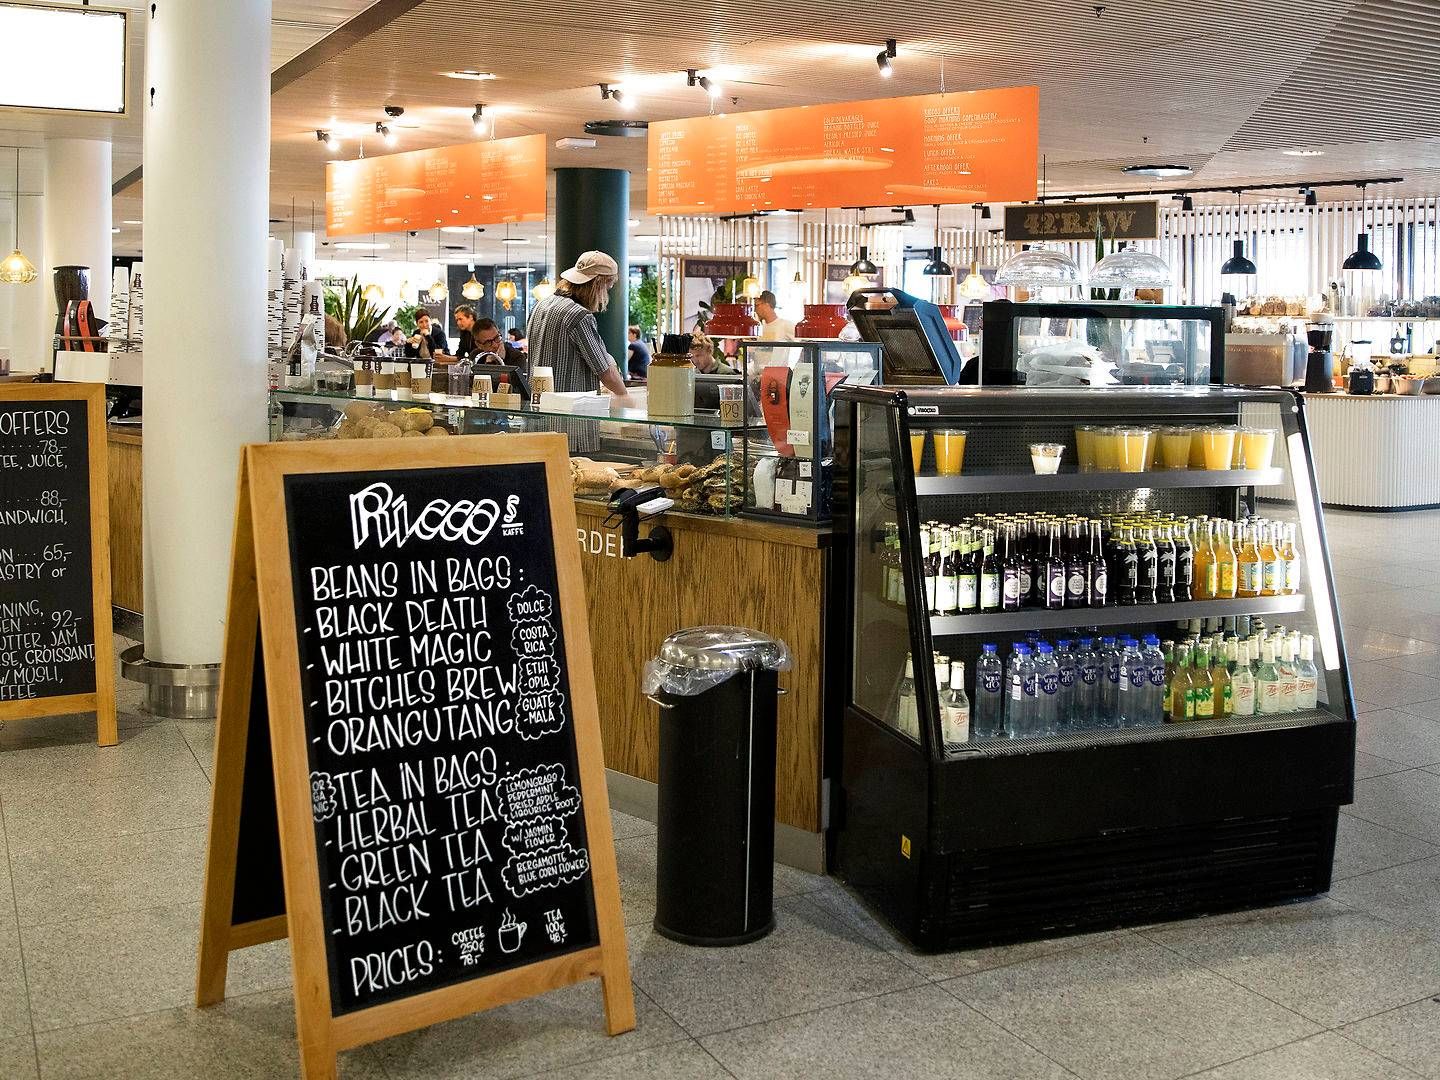 Riccos Kaffe har fået en ny medejer. | Foto: Finn Frandsen/Ritzau Scanpix